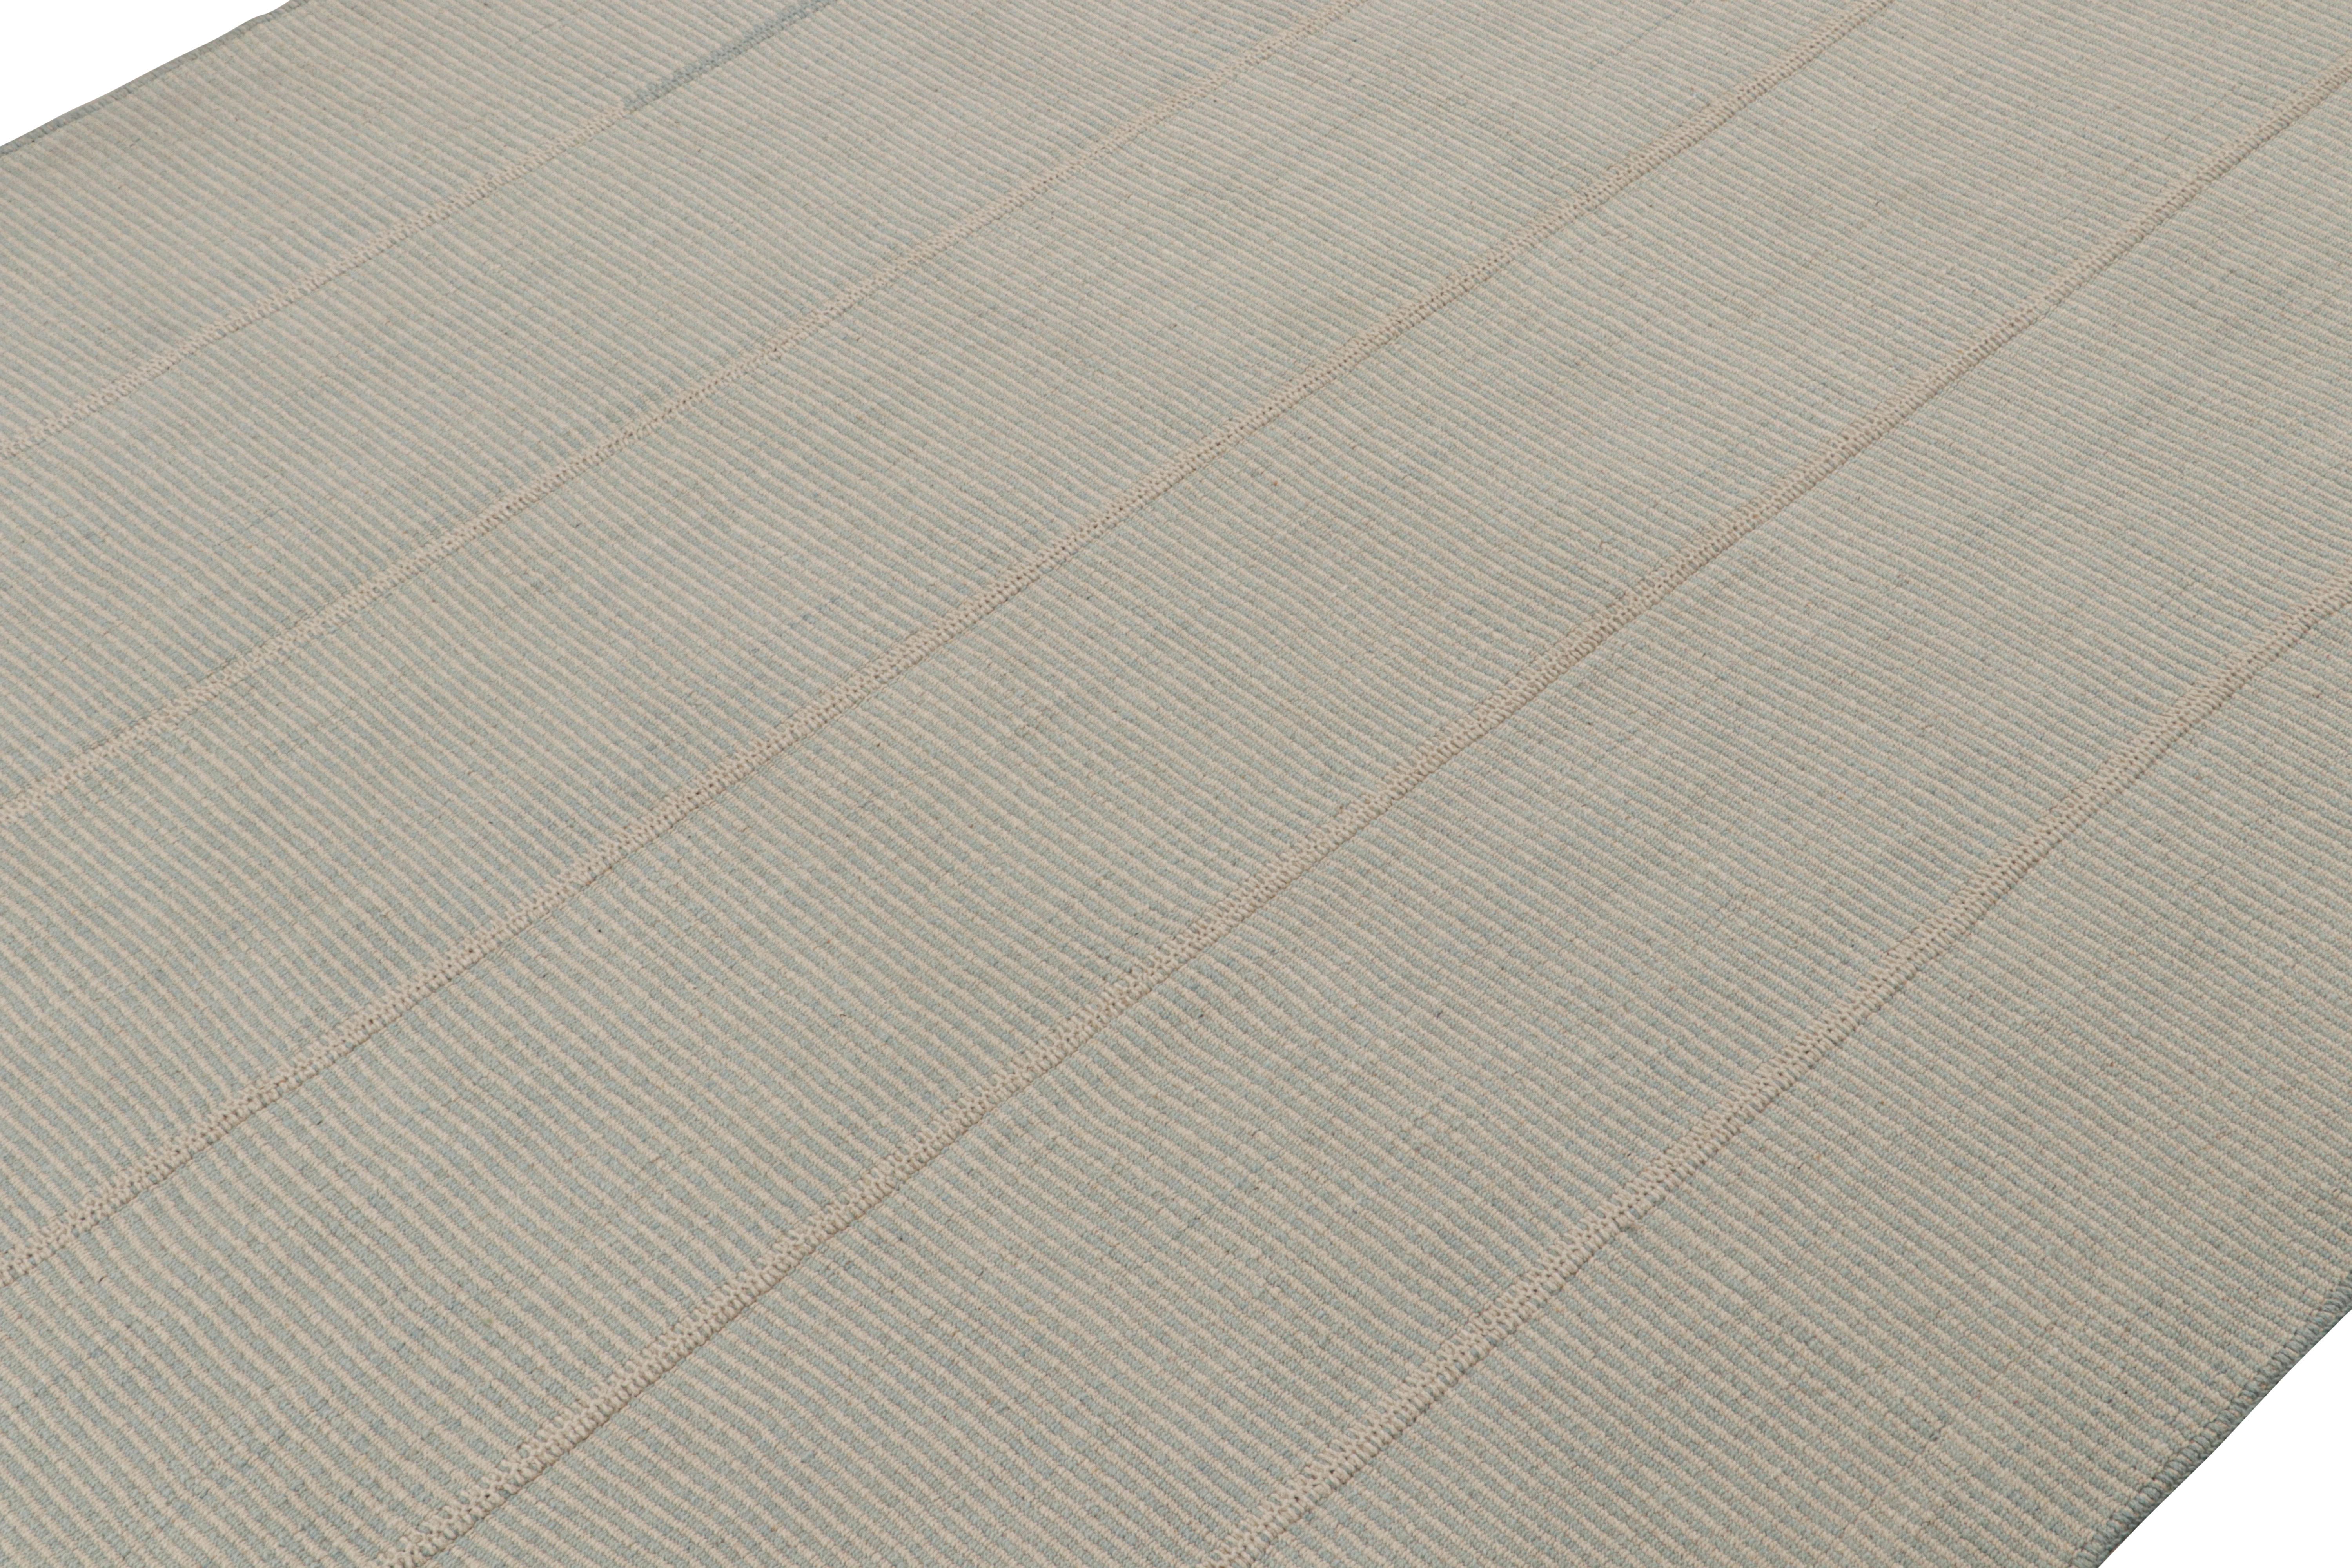 Handgewebter 10x14-Kilim aus Wolle aus einer kühnen neuen Linie zeitgenössischer Flachgewebe von Rug & Kilim.

Über das Design: 

Unser neuester 